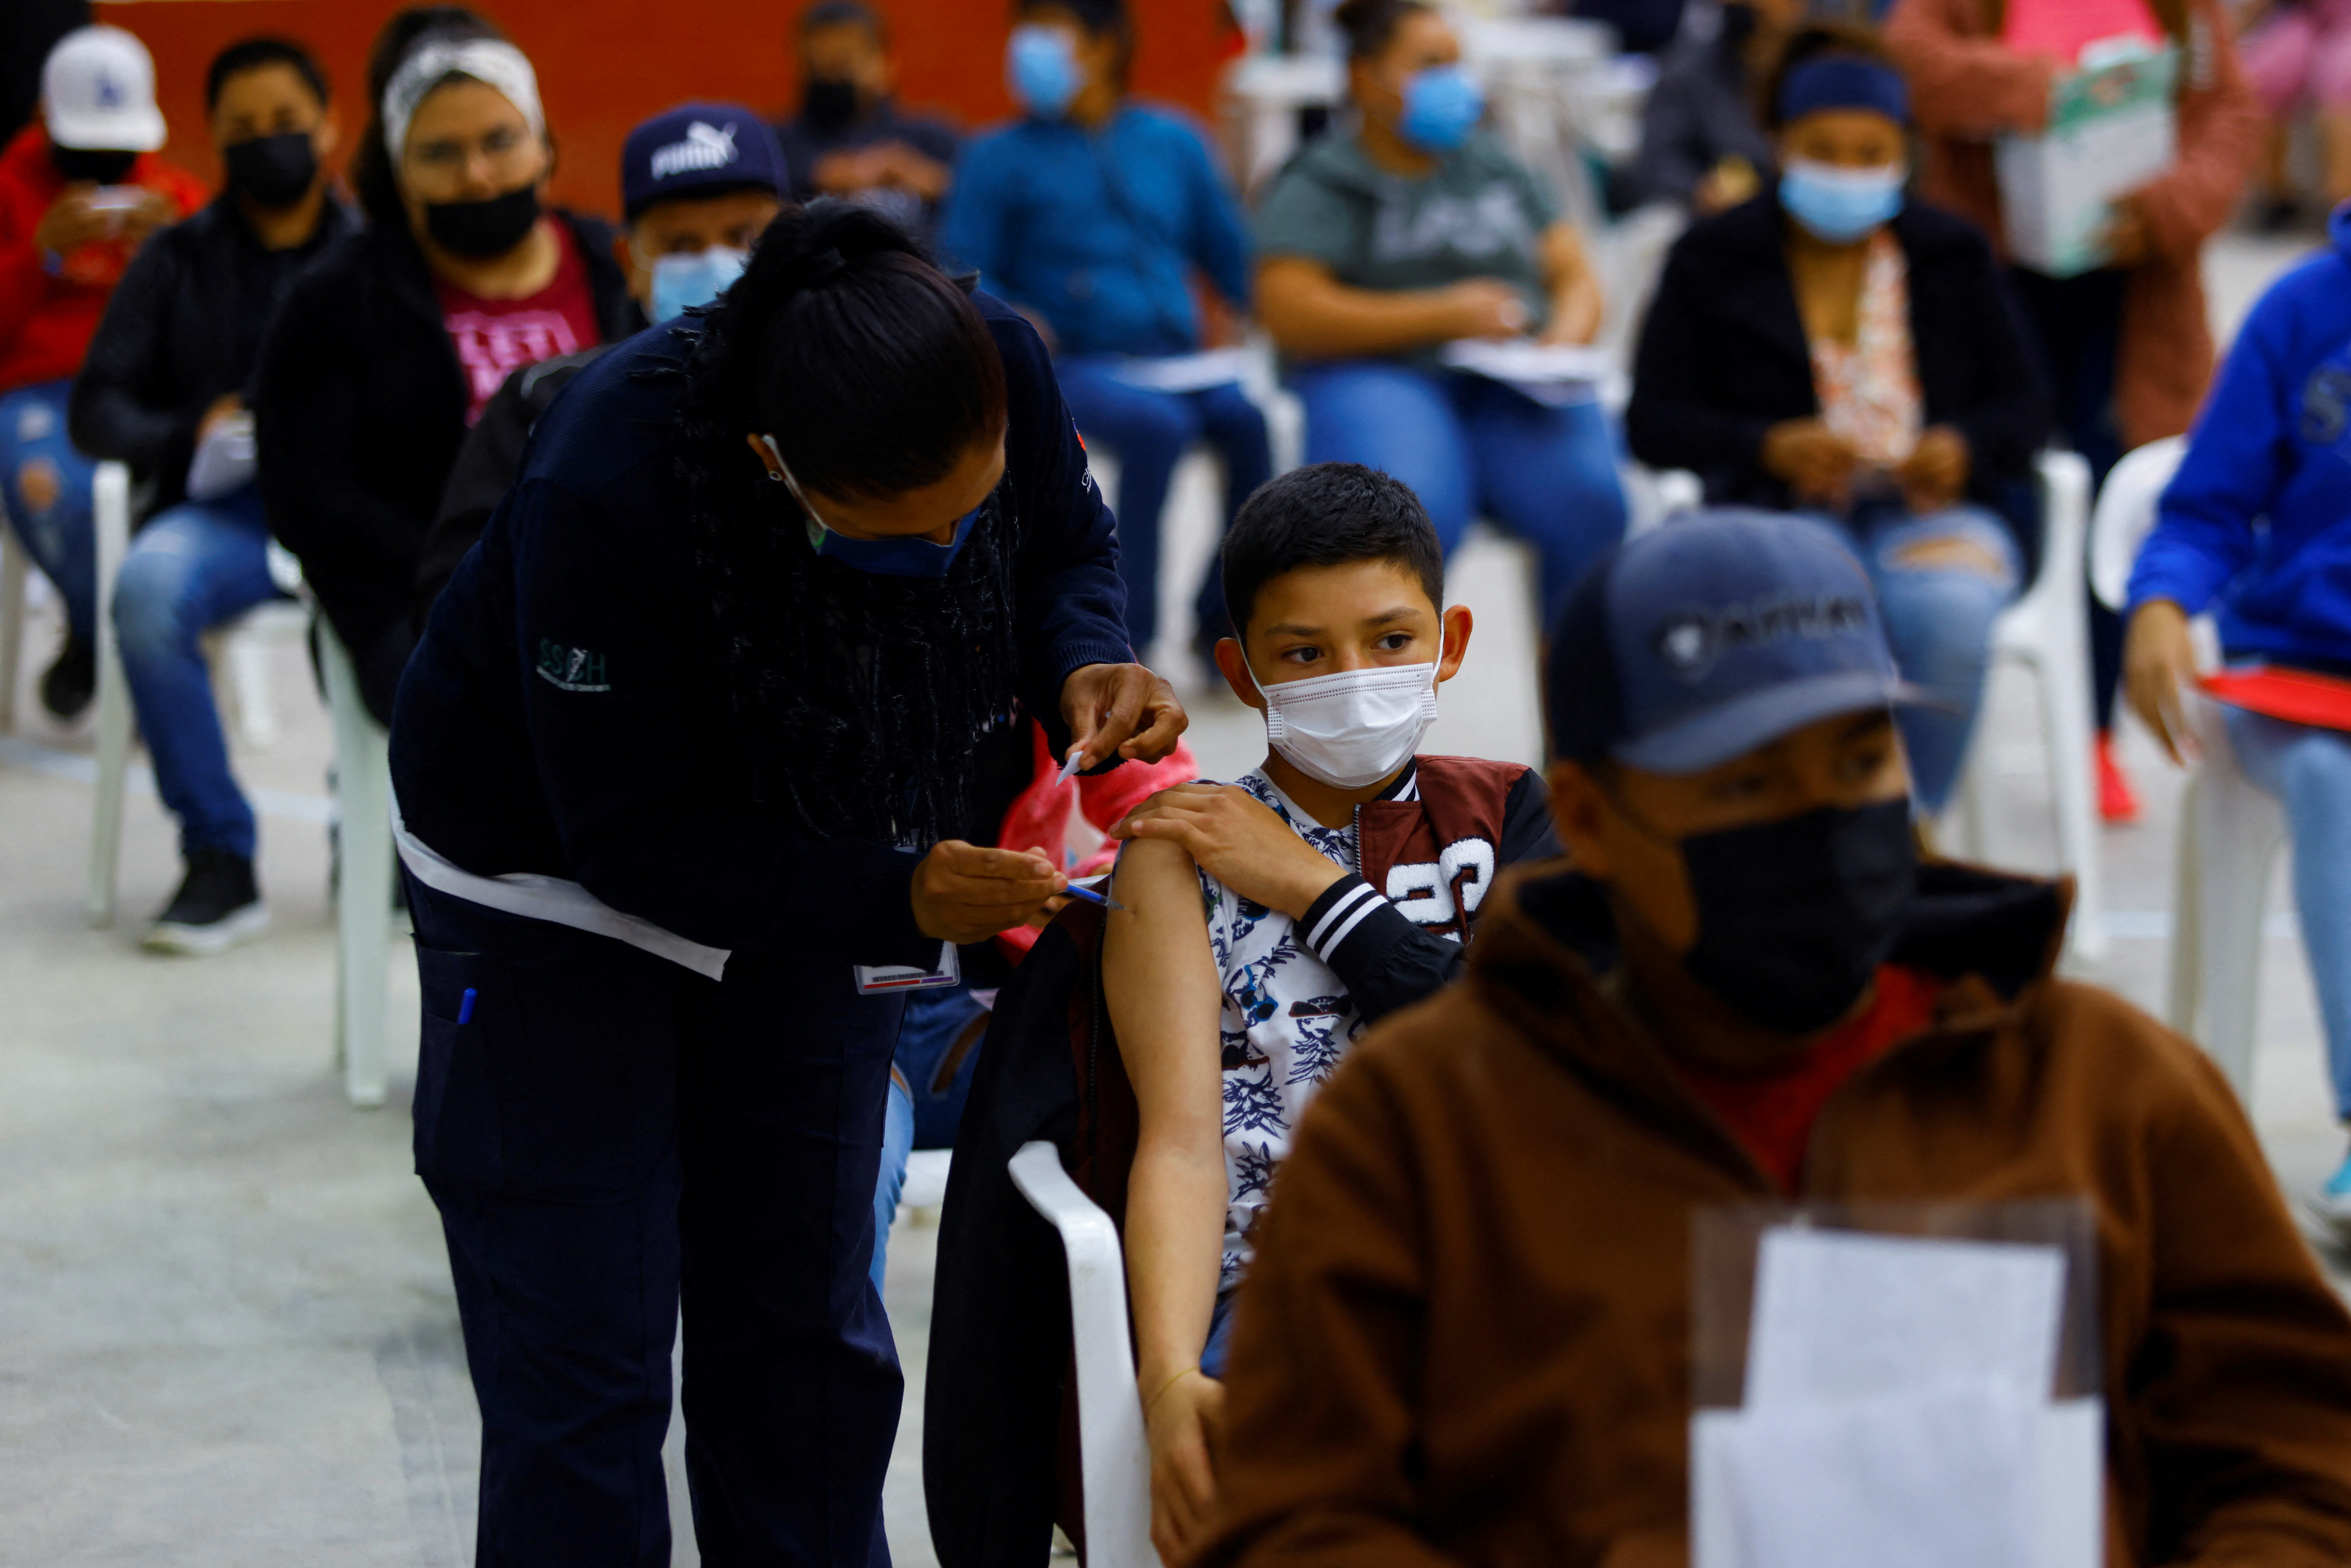 Скільки дітей могли отримати вакцину Covid-19 у Мексиці